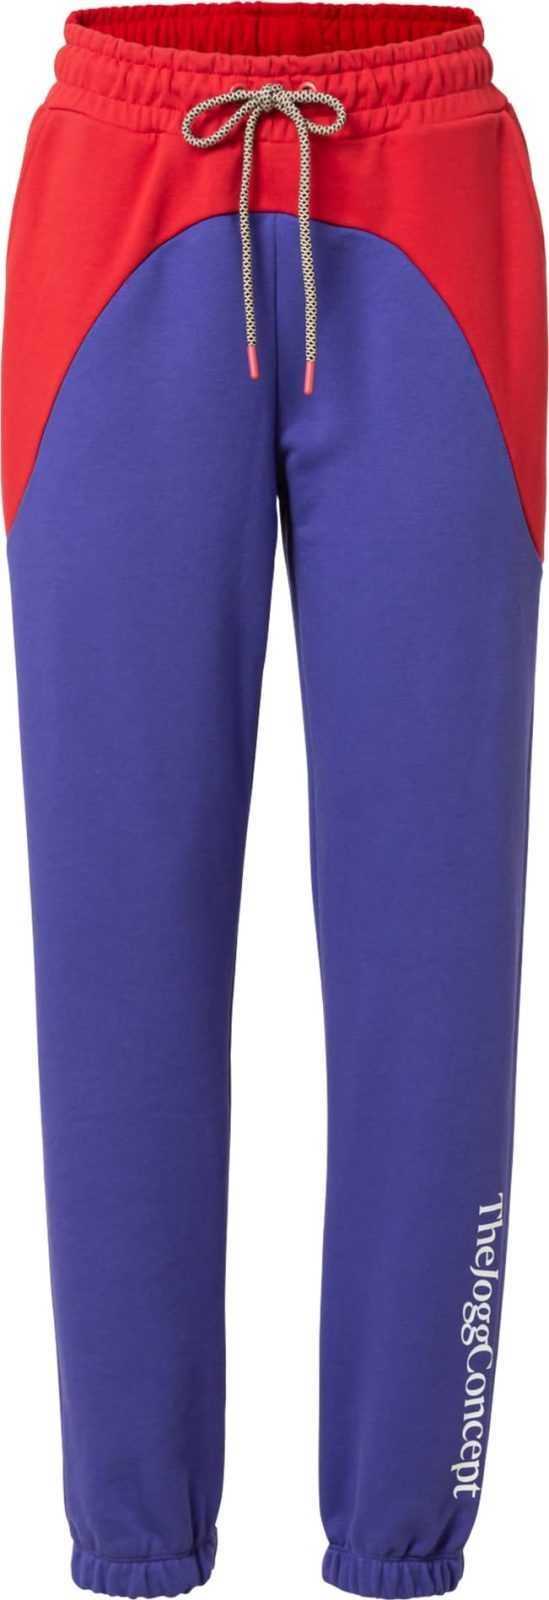 The Jogg Concept Kalhoty 'SAFINE' fialkově modrá / červená